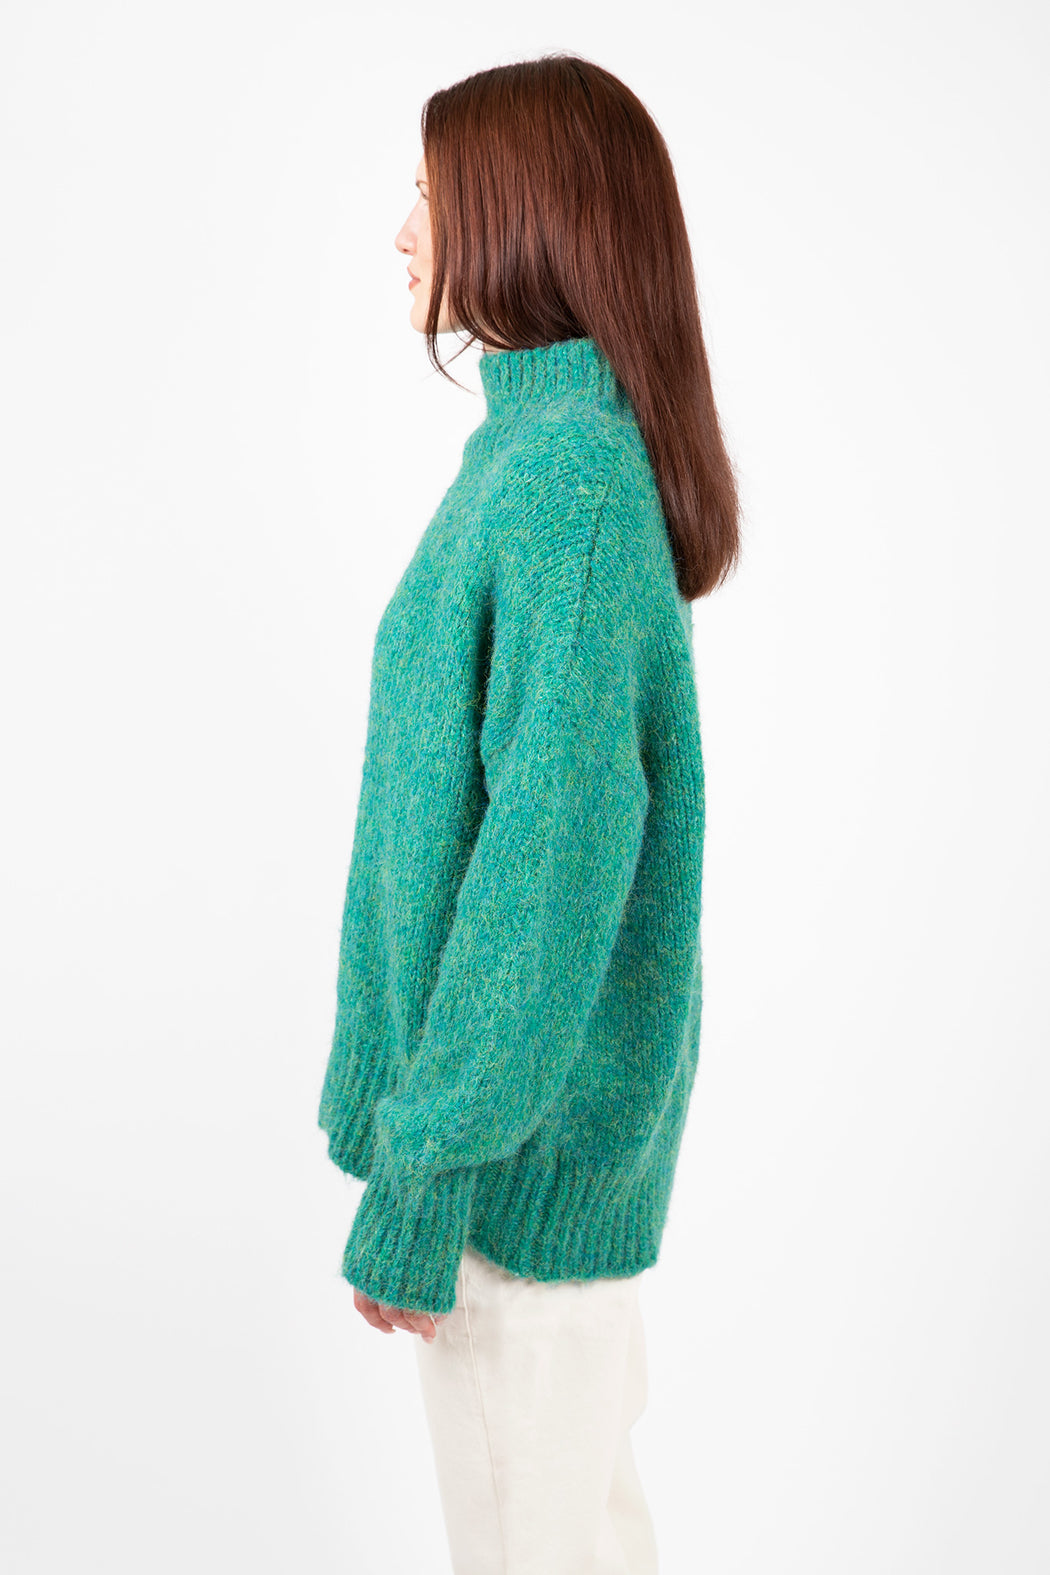 Lyla-Luxe-Aggie-Mockneck-Sweater-Emerald-Green